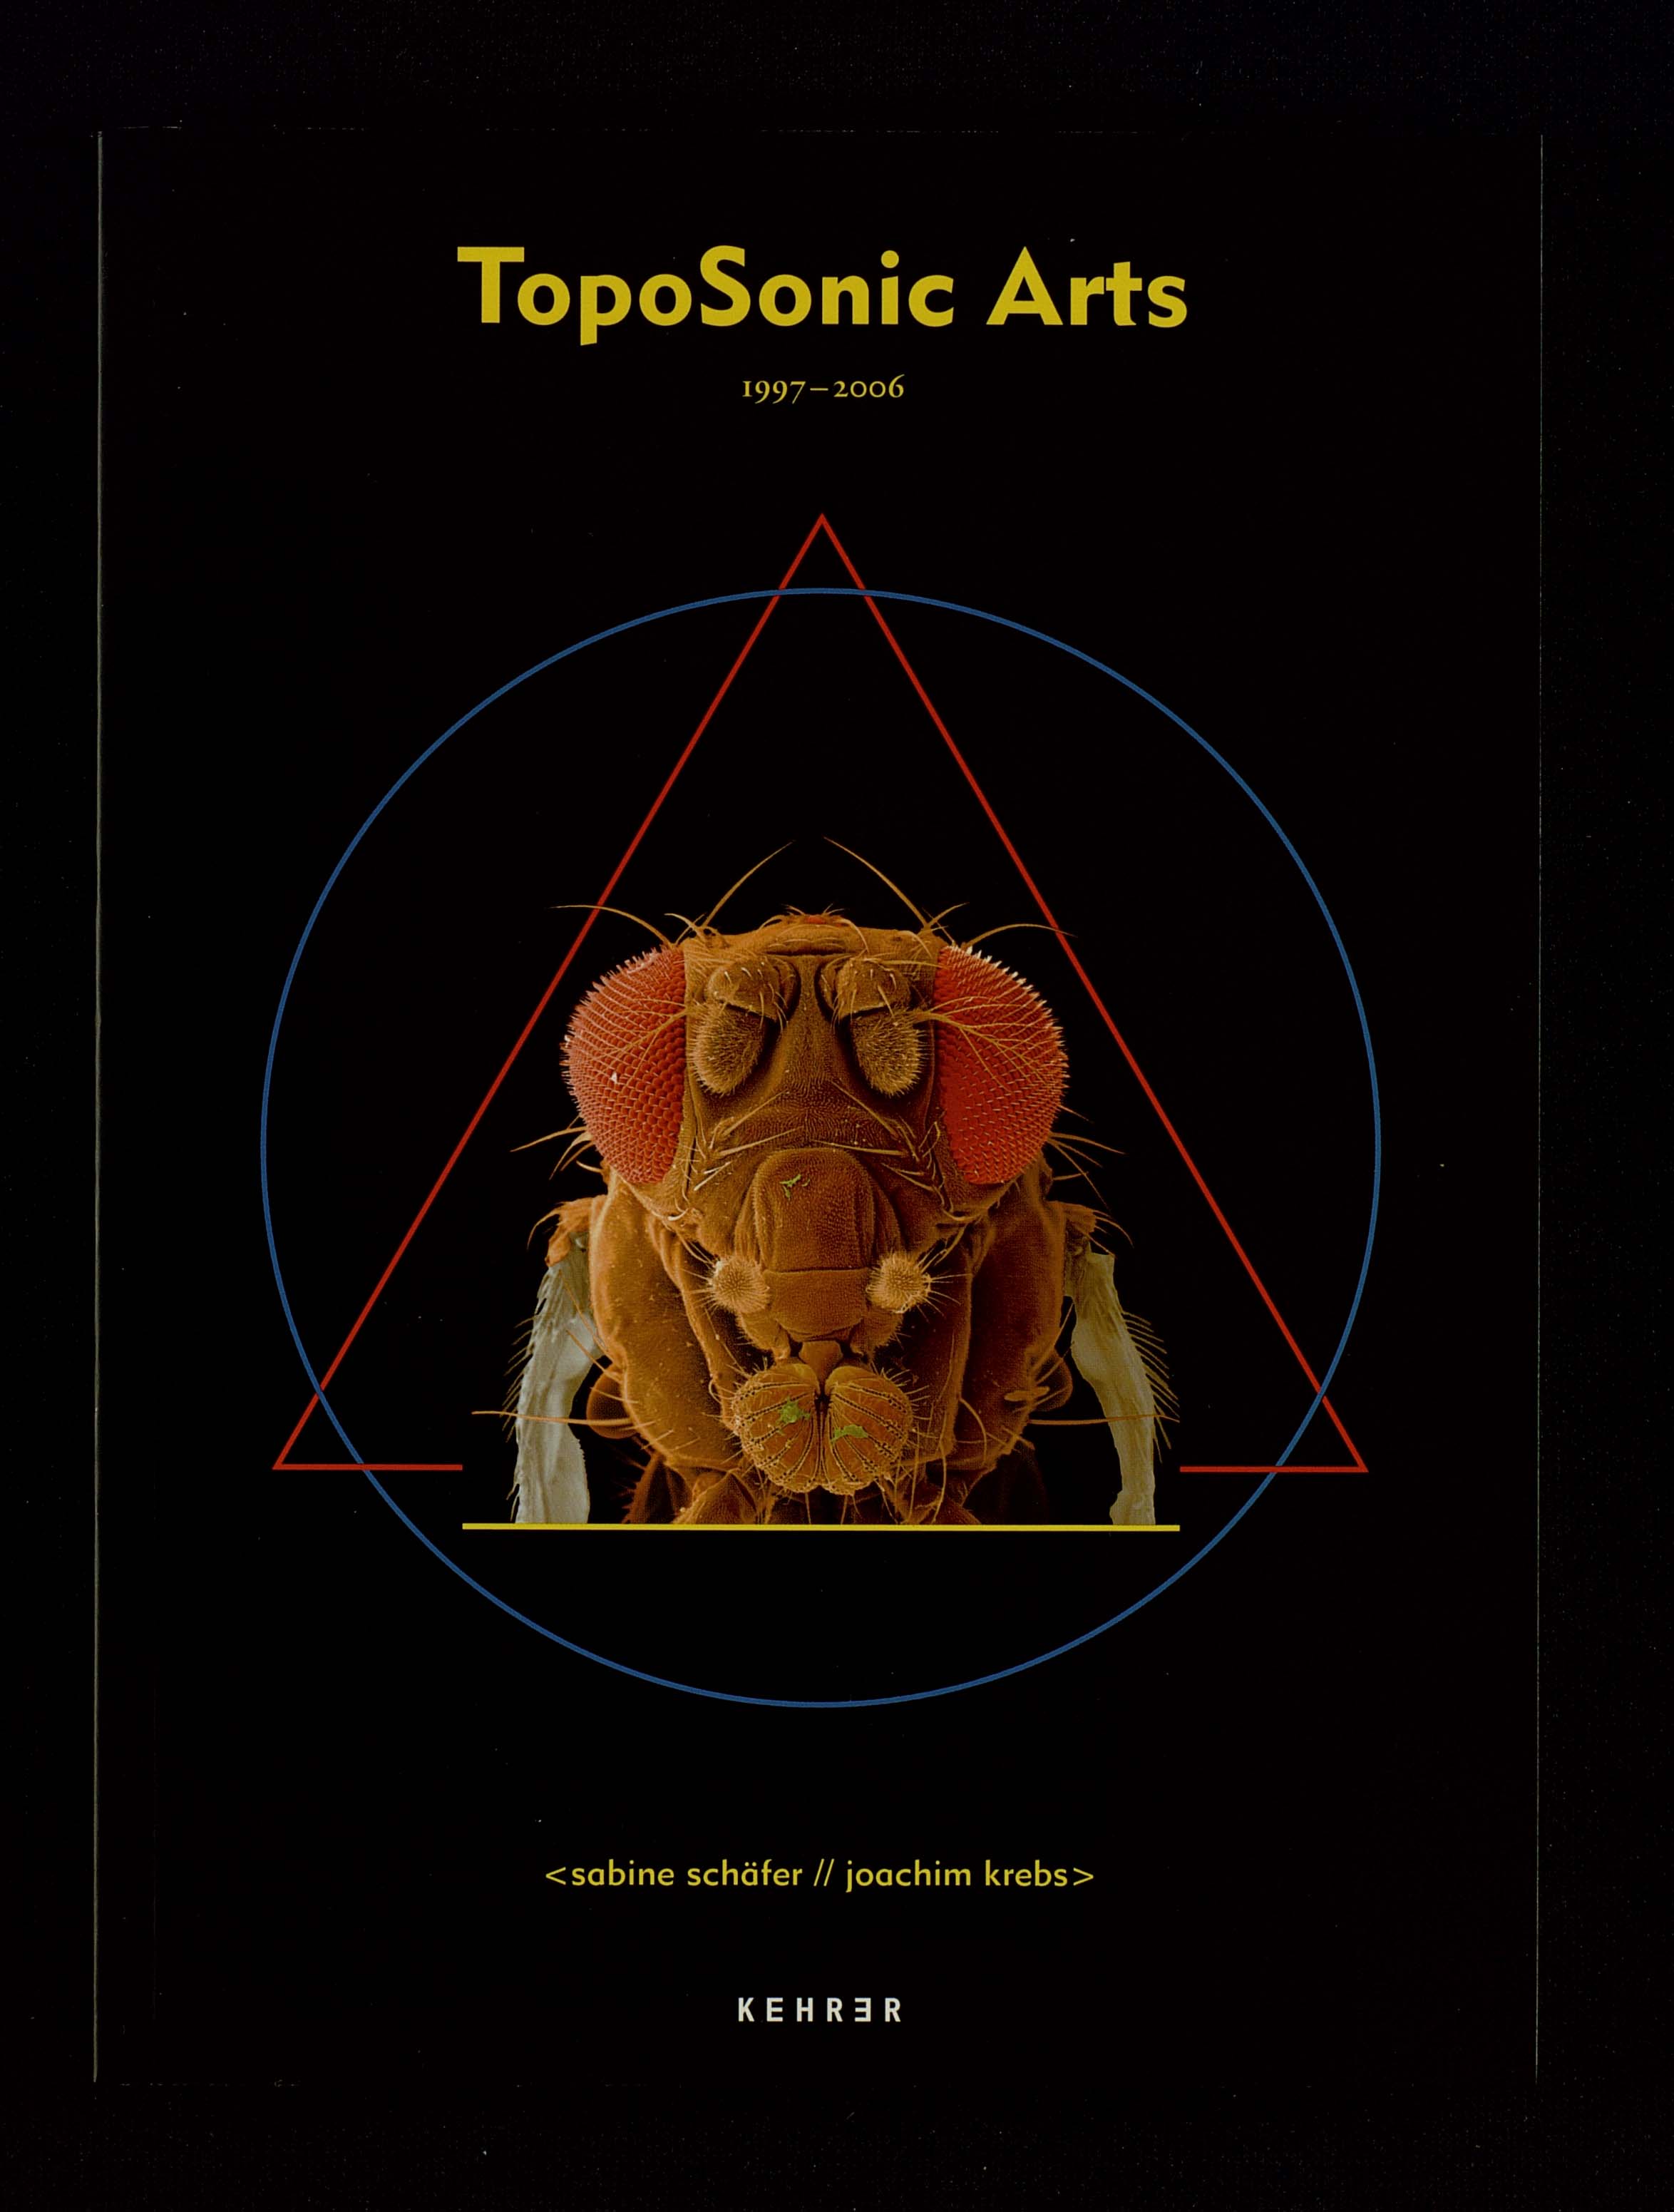 Künstlerkatalog TopoSonic Arts, Publikation mit Werkdokumentation und Textbeiträgen, Ein Fliegenkopf ist abgebildet in einem roten Dreieck und einem blauem Kreis.